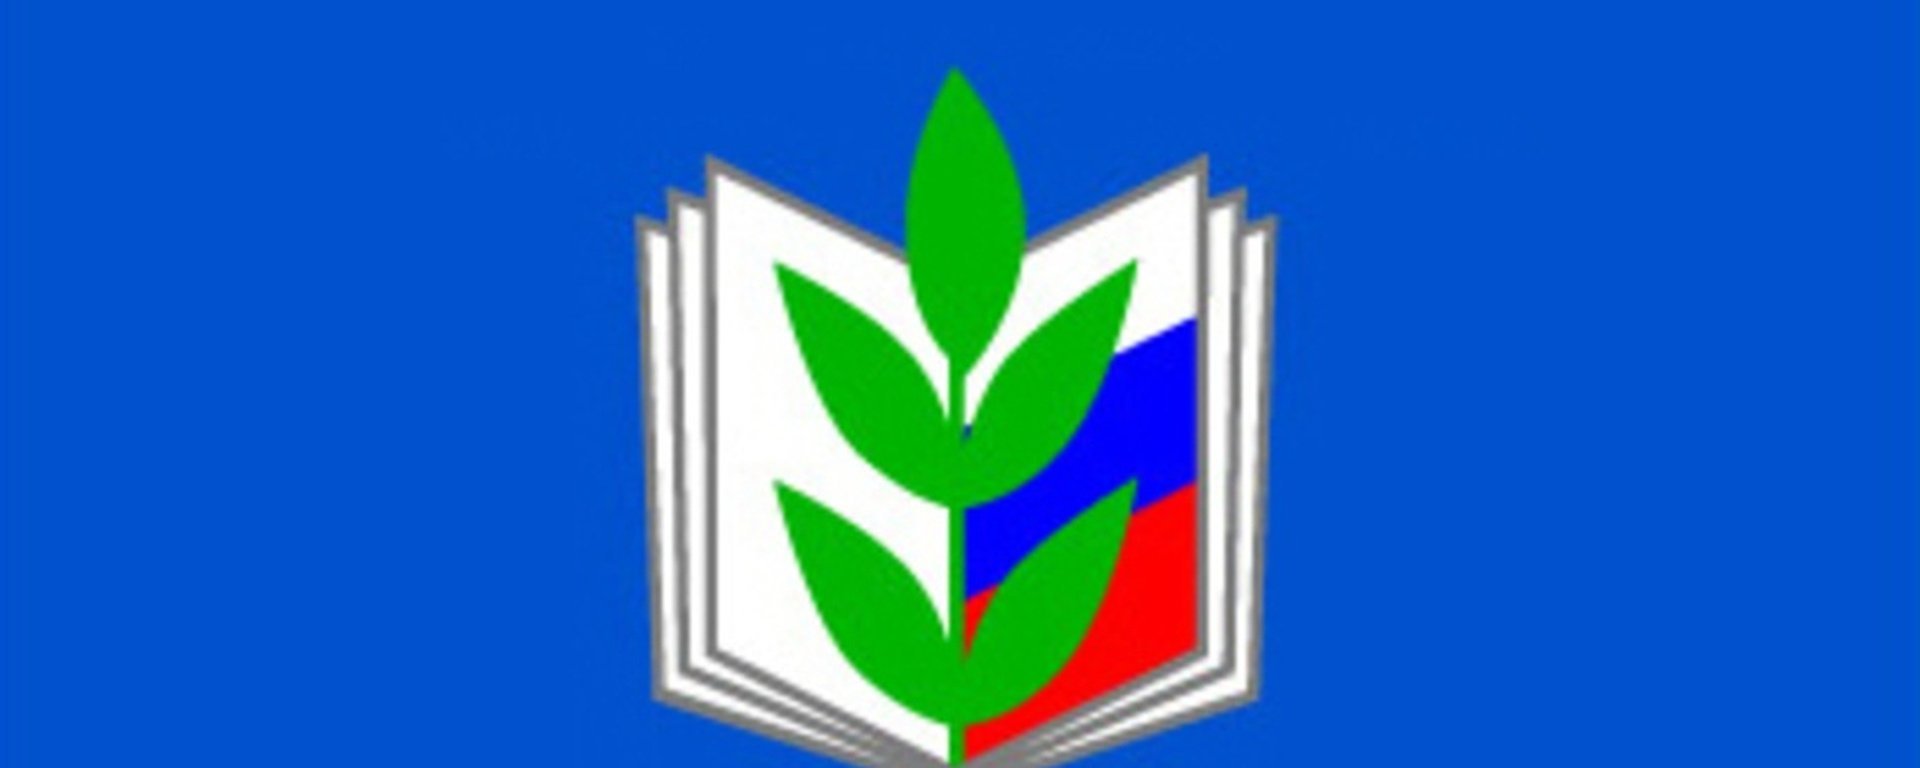 Логотип профсоюза на прозрачном фоне фото